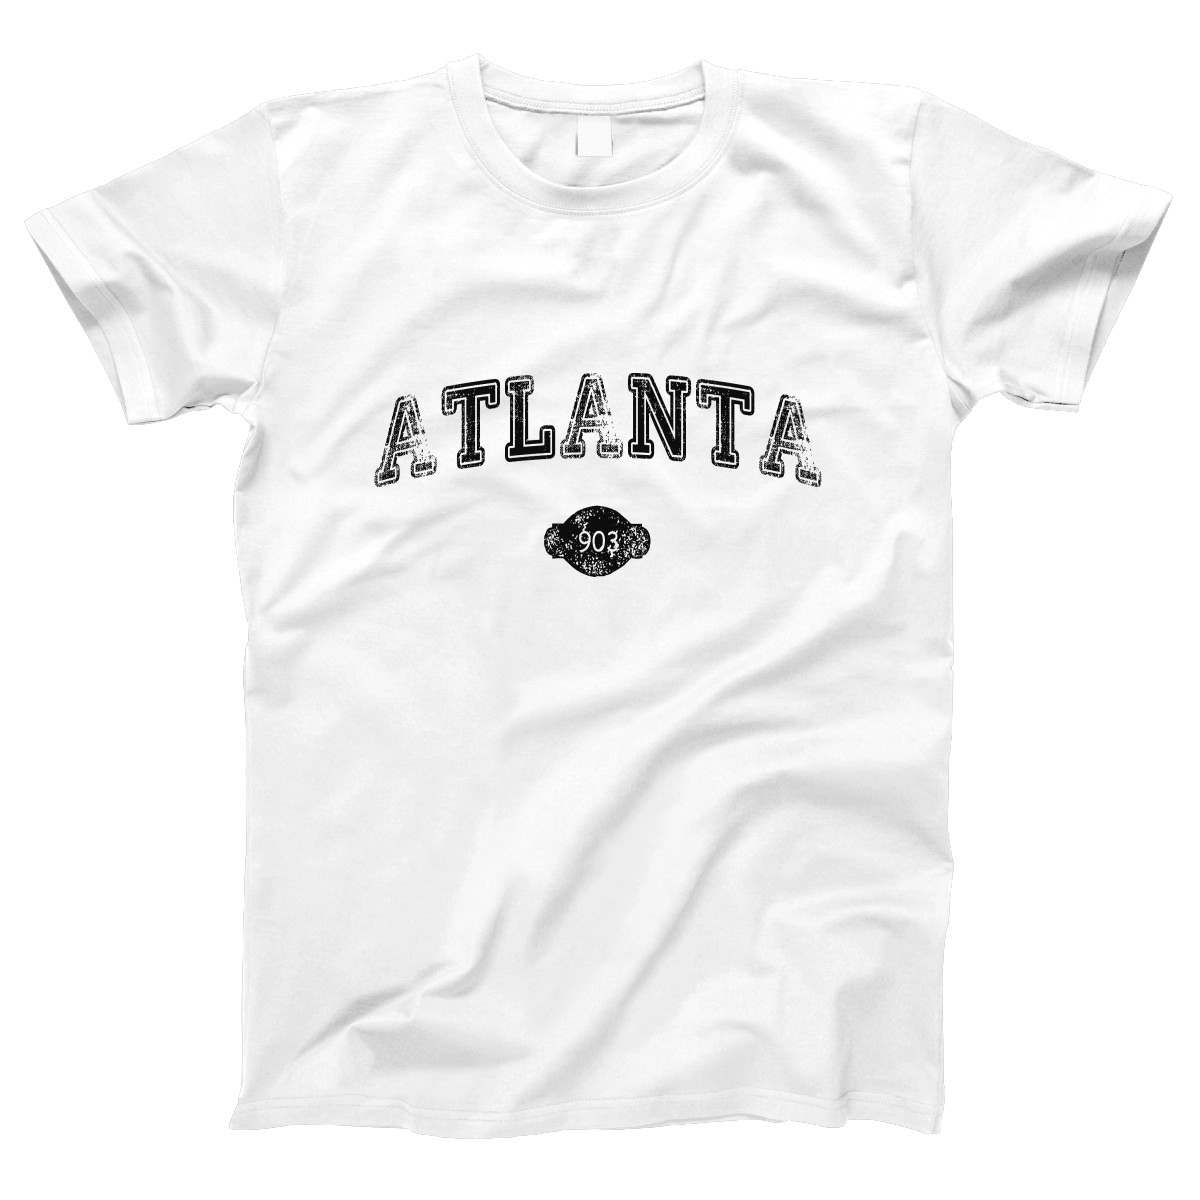 Atlanta 903 Represent Women's T-shirt | White